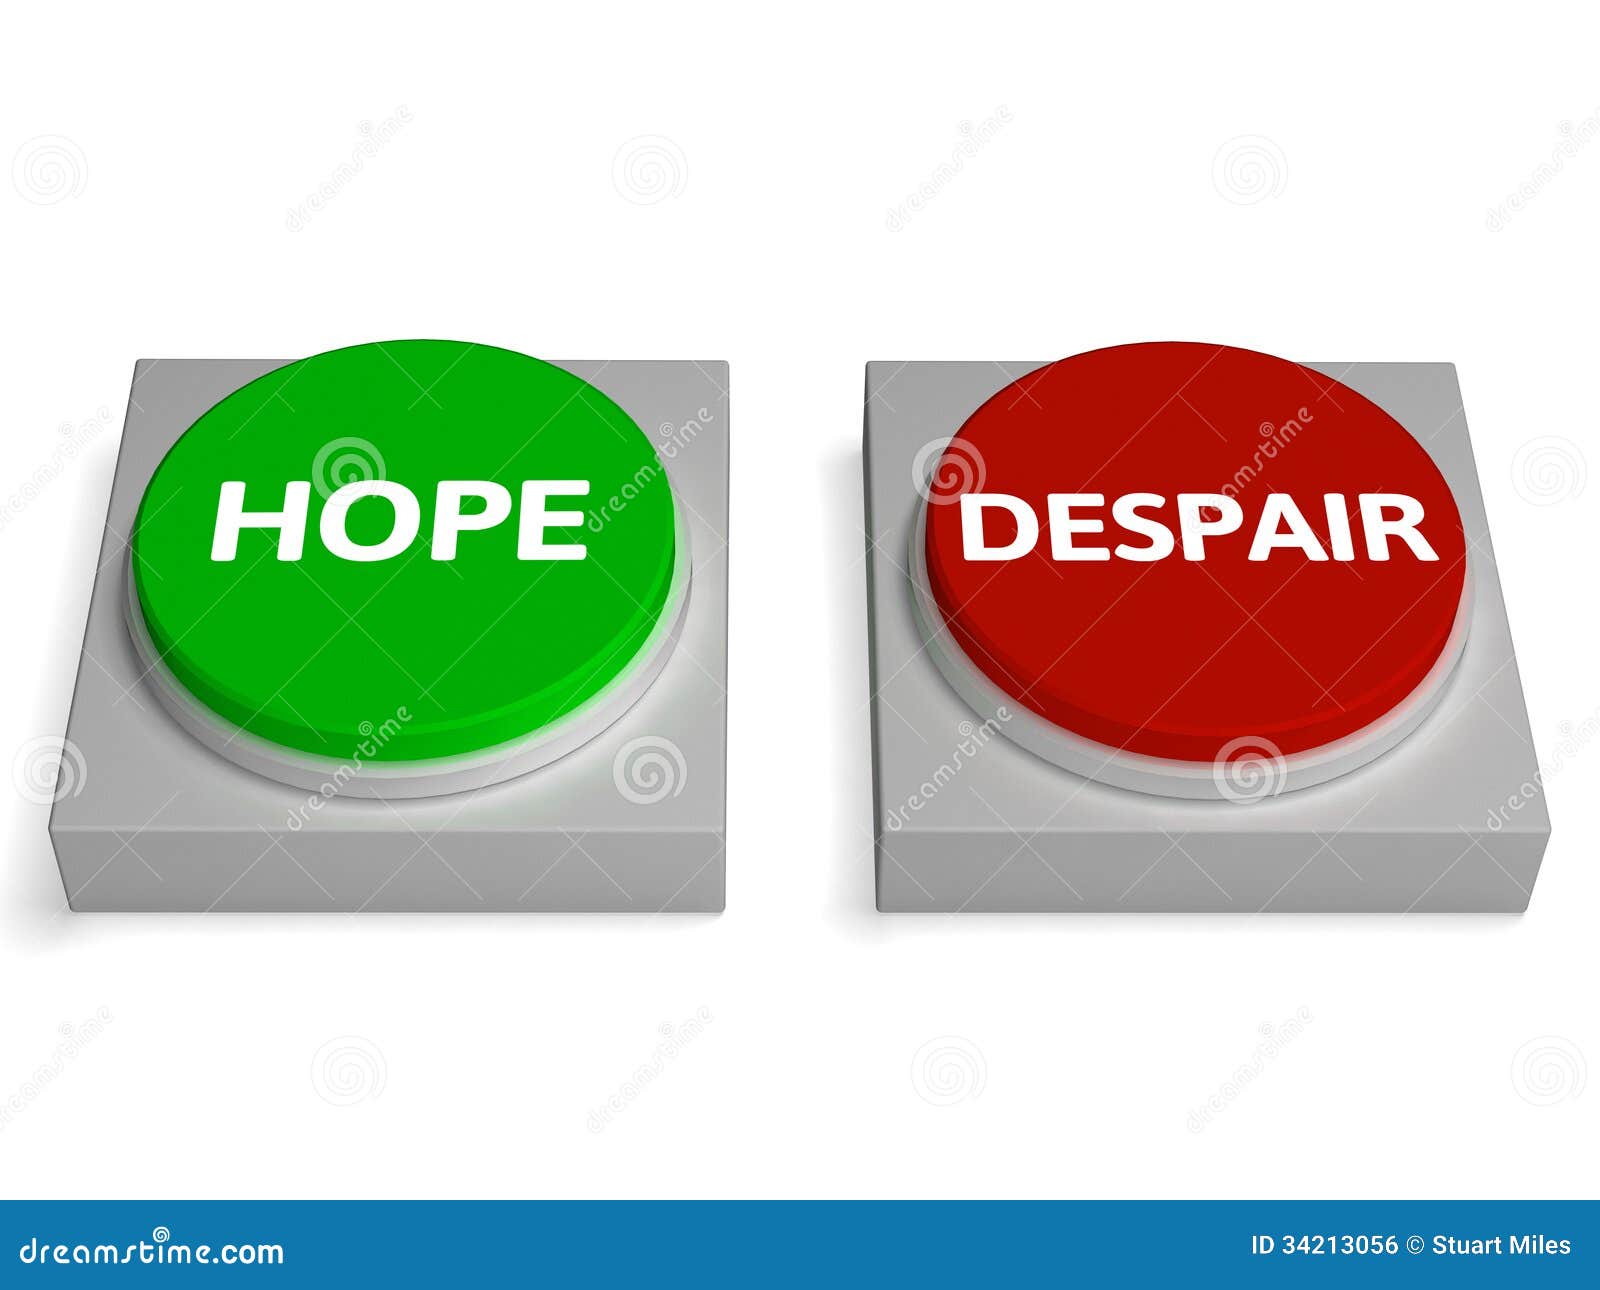 hope despair buttons show hopelessness or hopeful